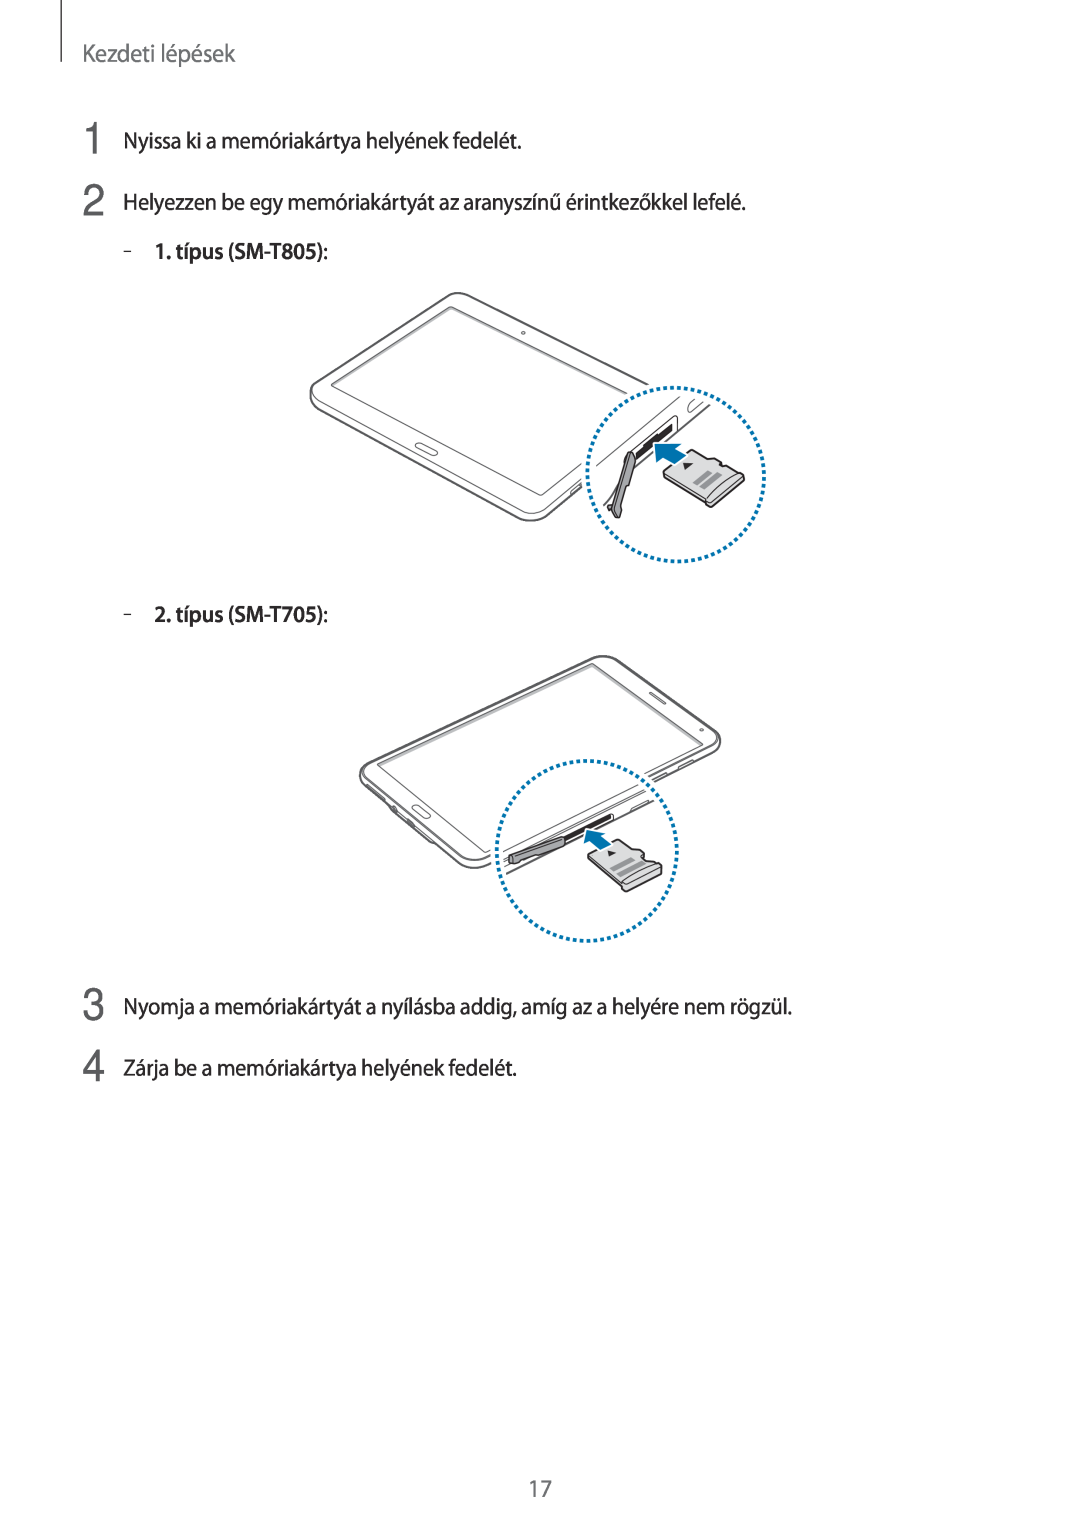 Samsung SM-T705NTSAXEO Kezdeti lépések, Nyissa ki a memóriakártya helyének fedelét, 1. típus SM-T805, 2. típus SM-T705 